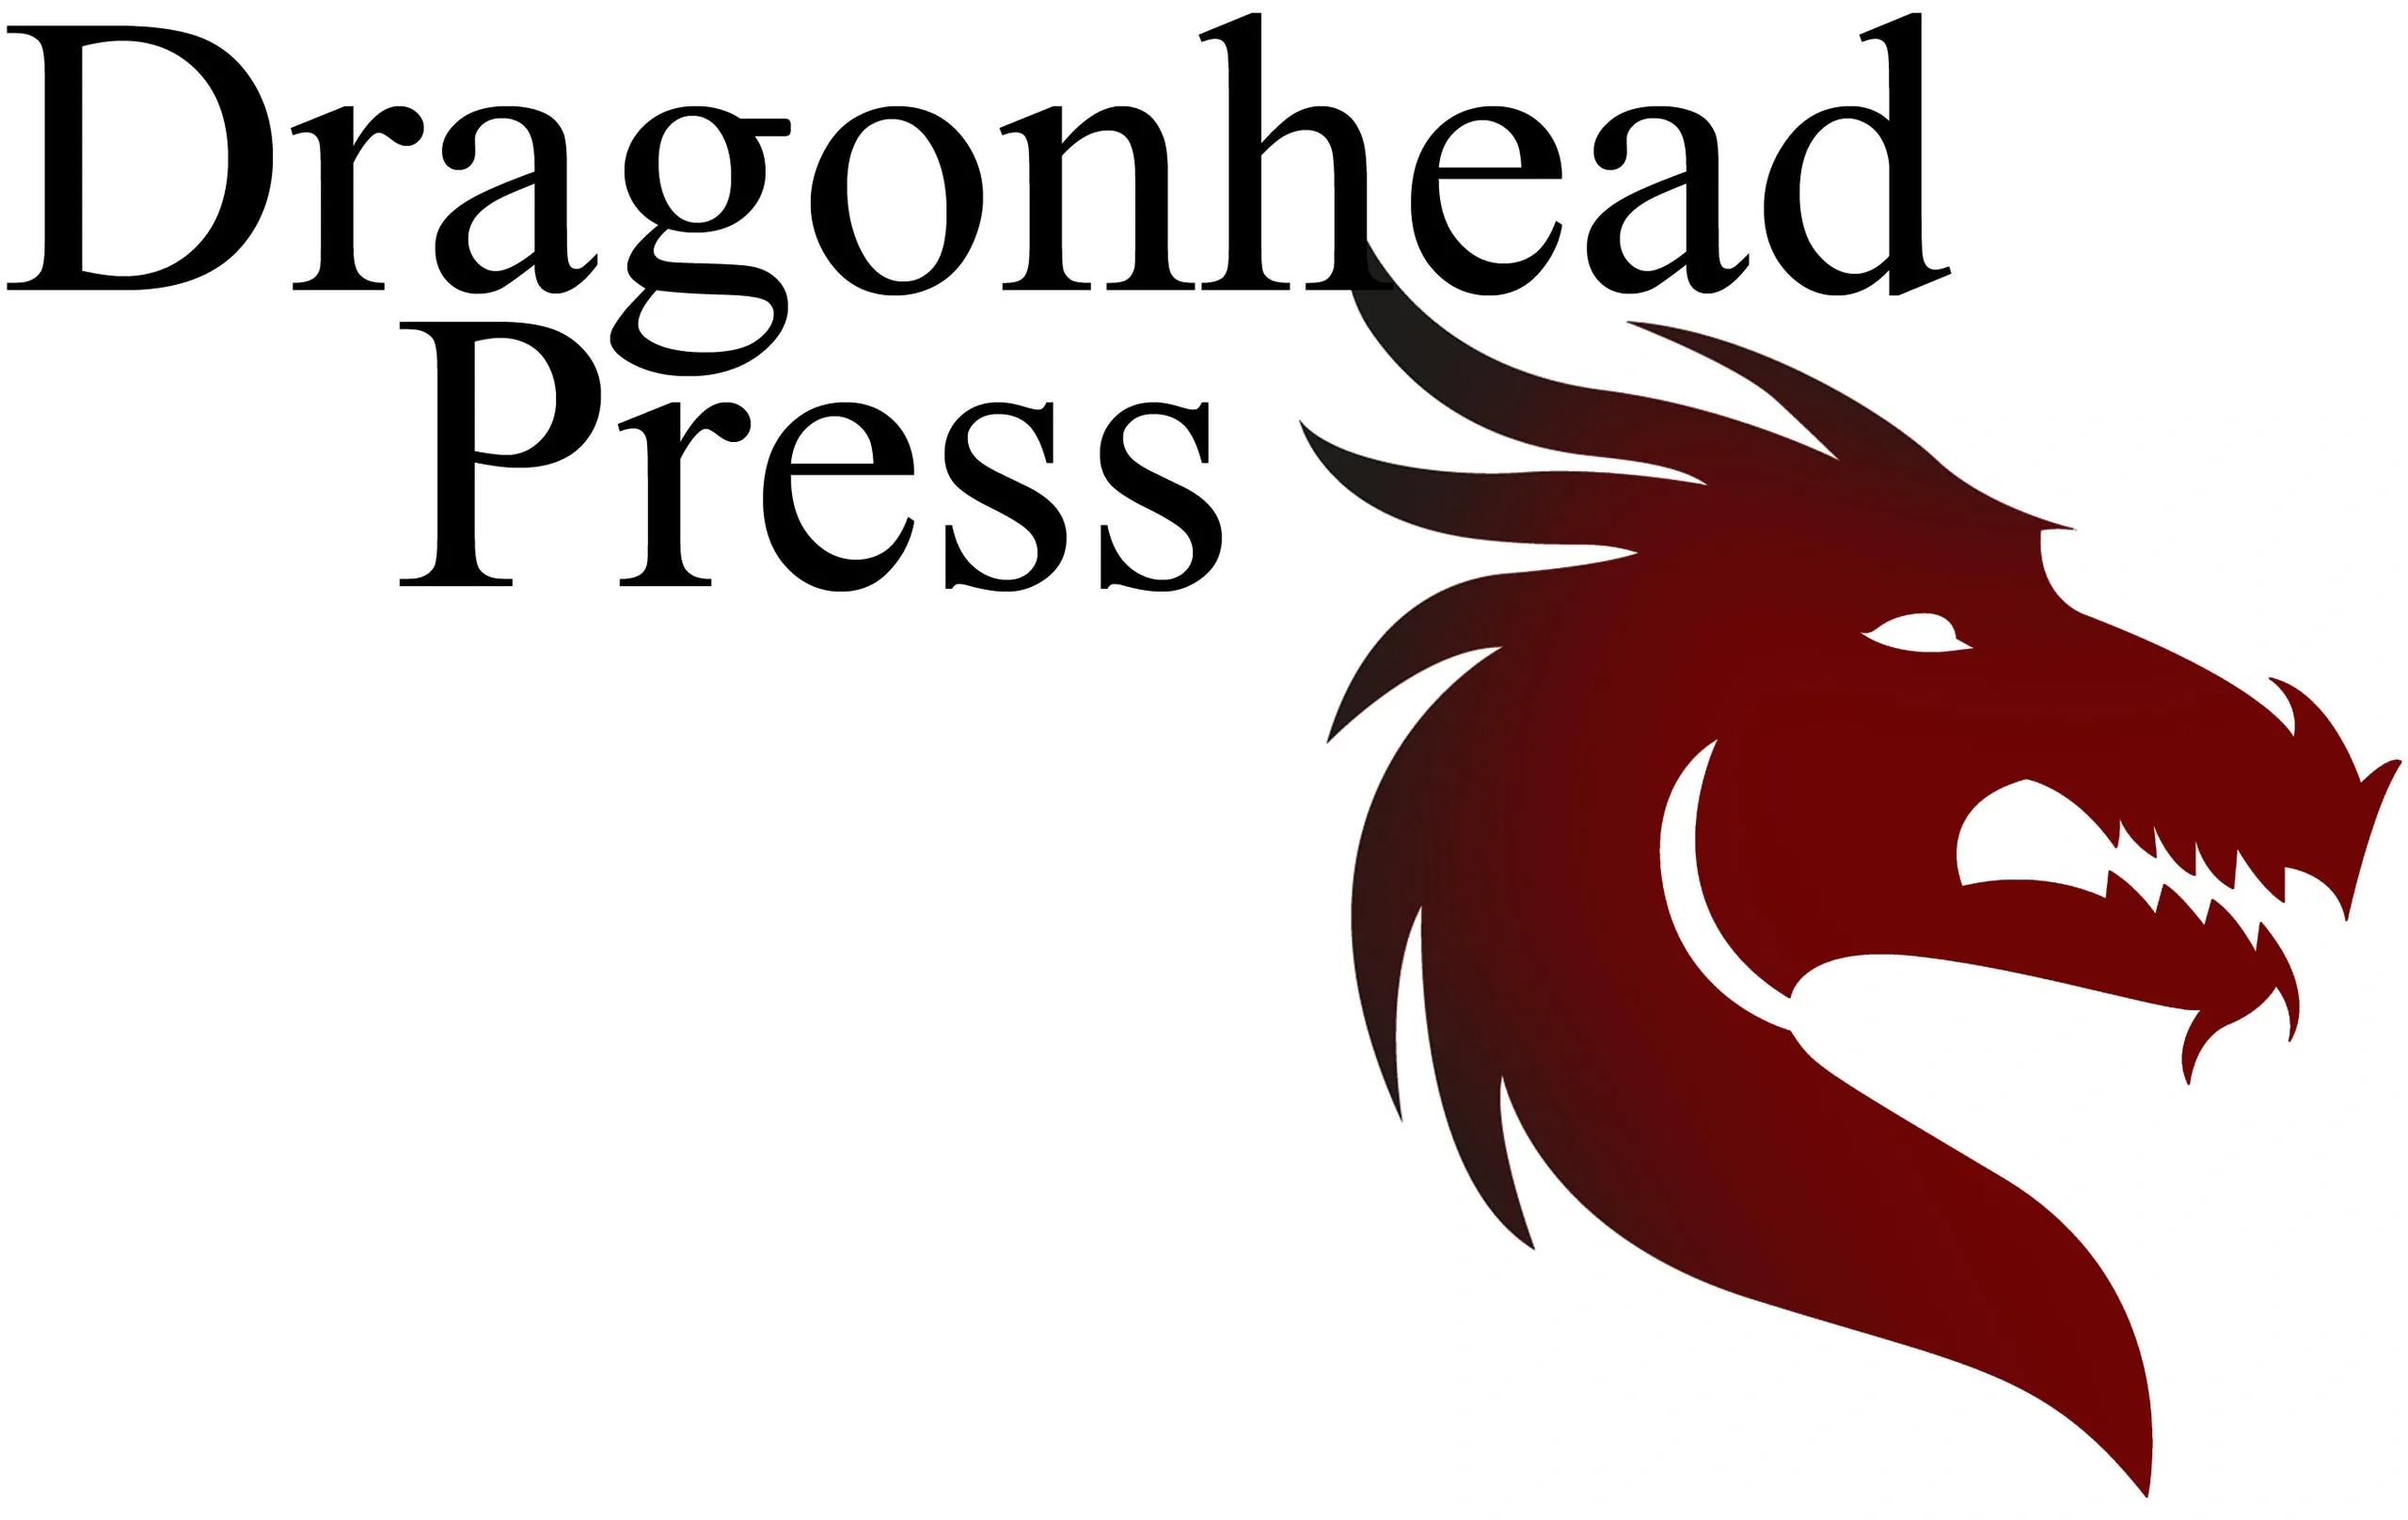 Dragonhead Press